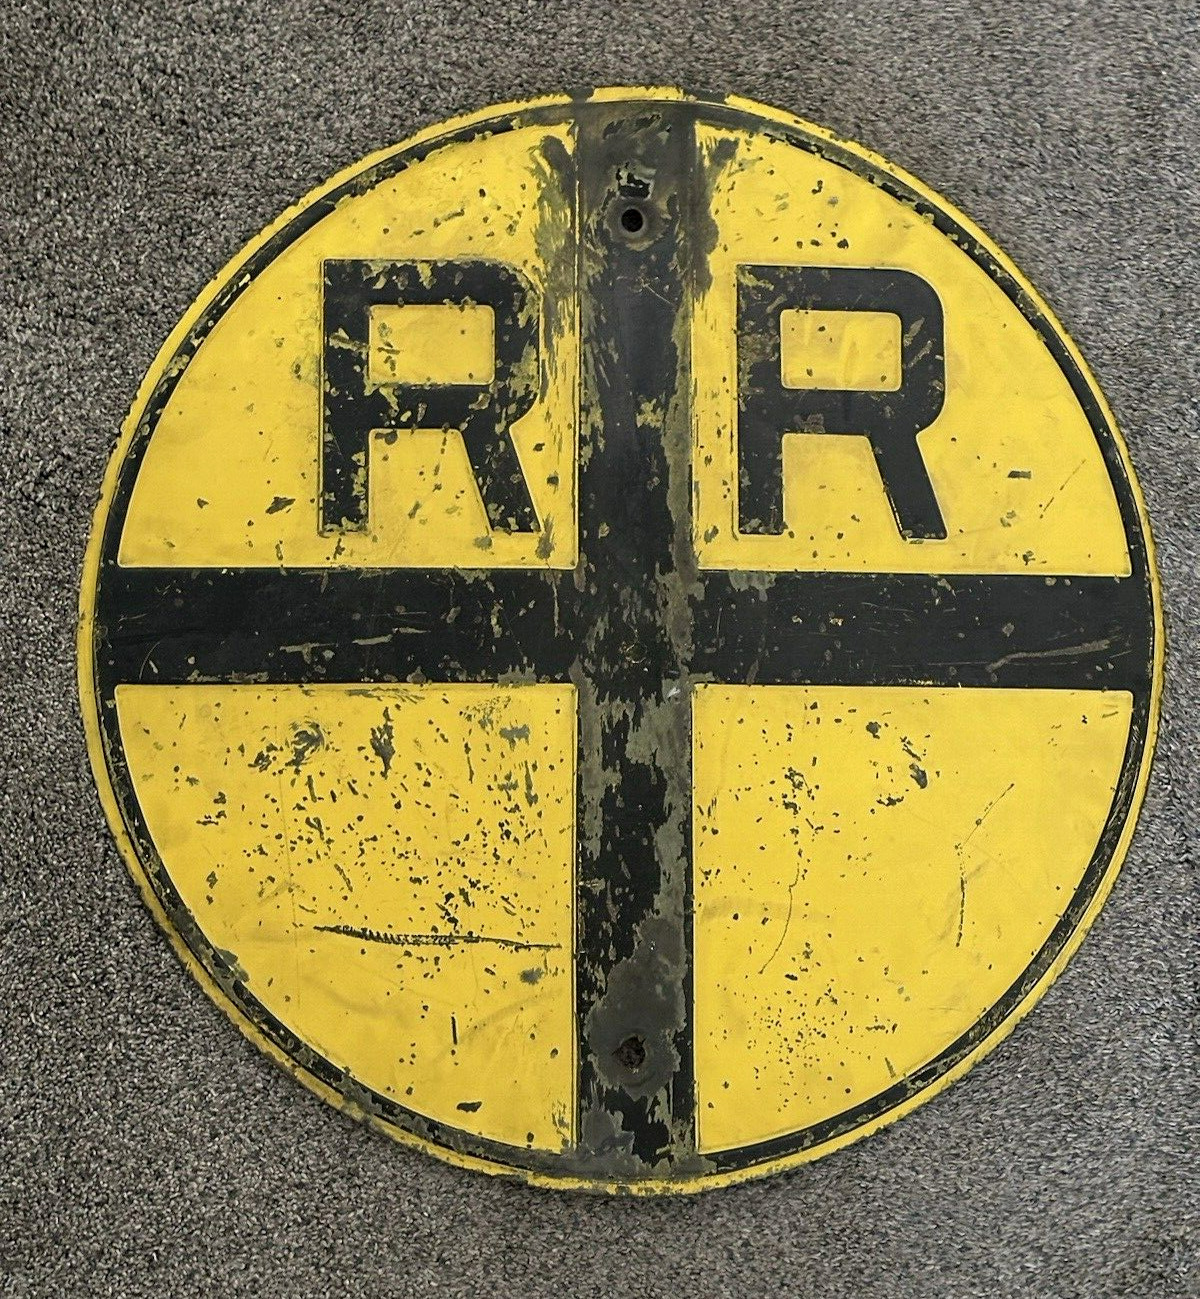 Authentic STEEL EMBOSSED Street Road SIGN  R/R Railroad Crossing HEAVY METAL